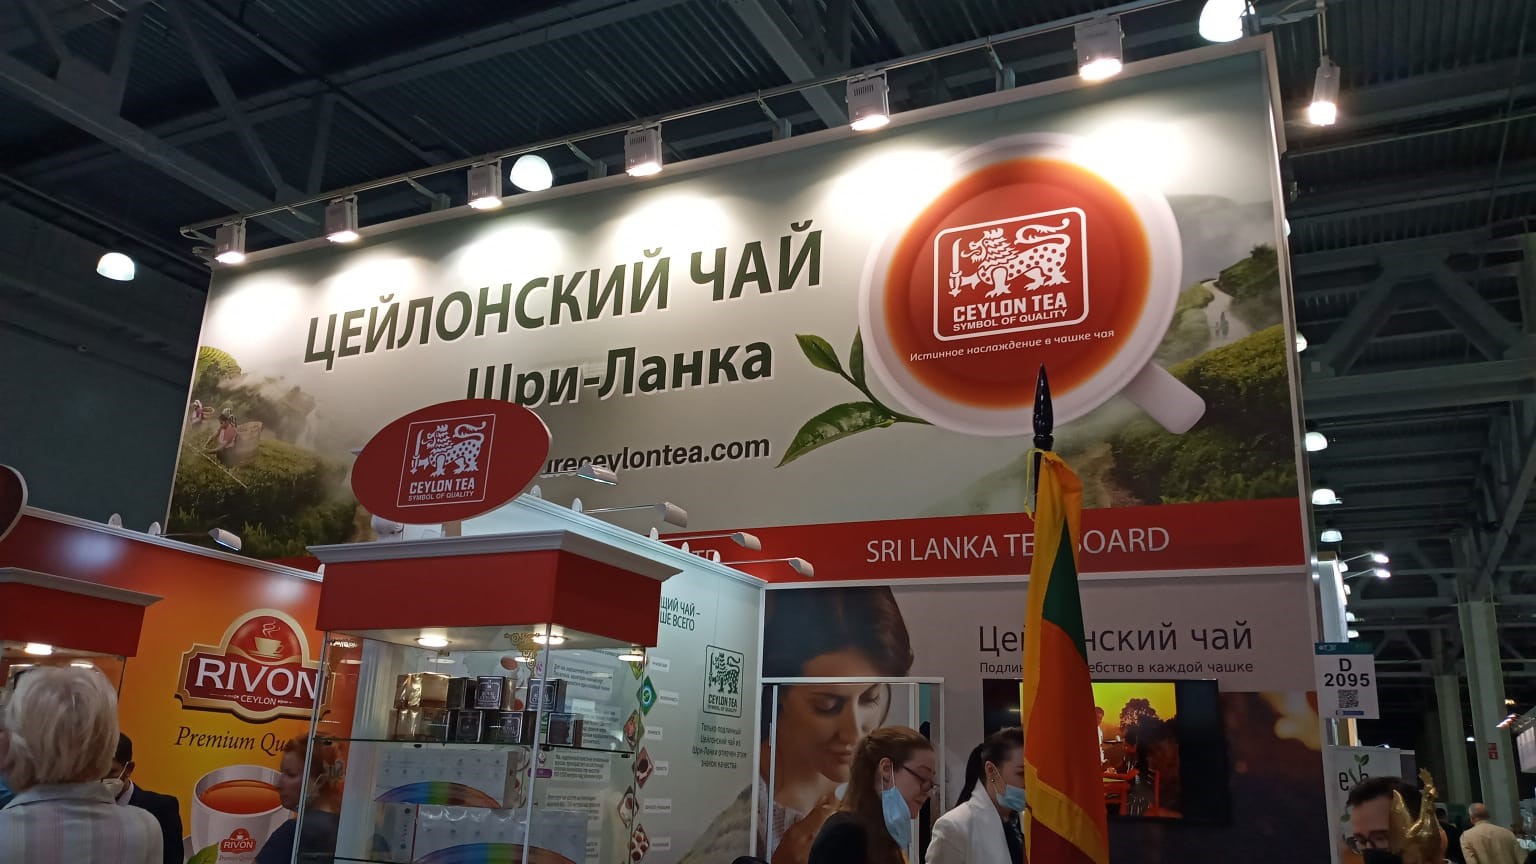 Sri Lanka Tea Board Participates at the “World Food Moscow 2021”